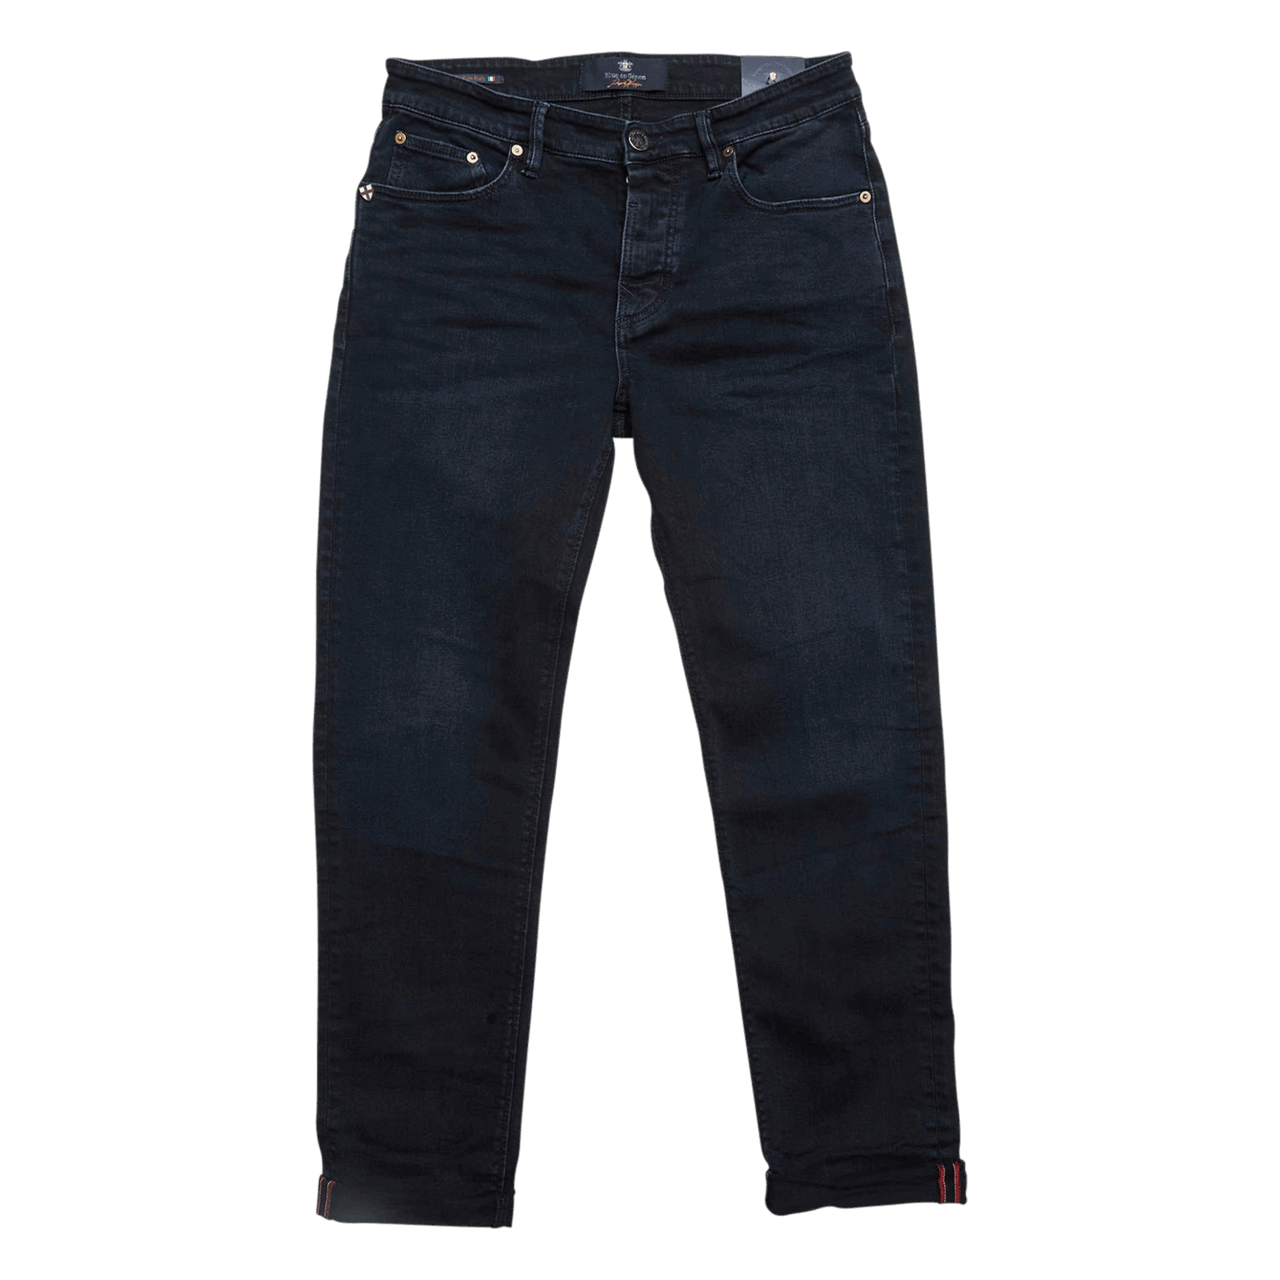 BLUE DE GENES Vinci 3325 Black Jeans